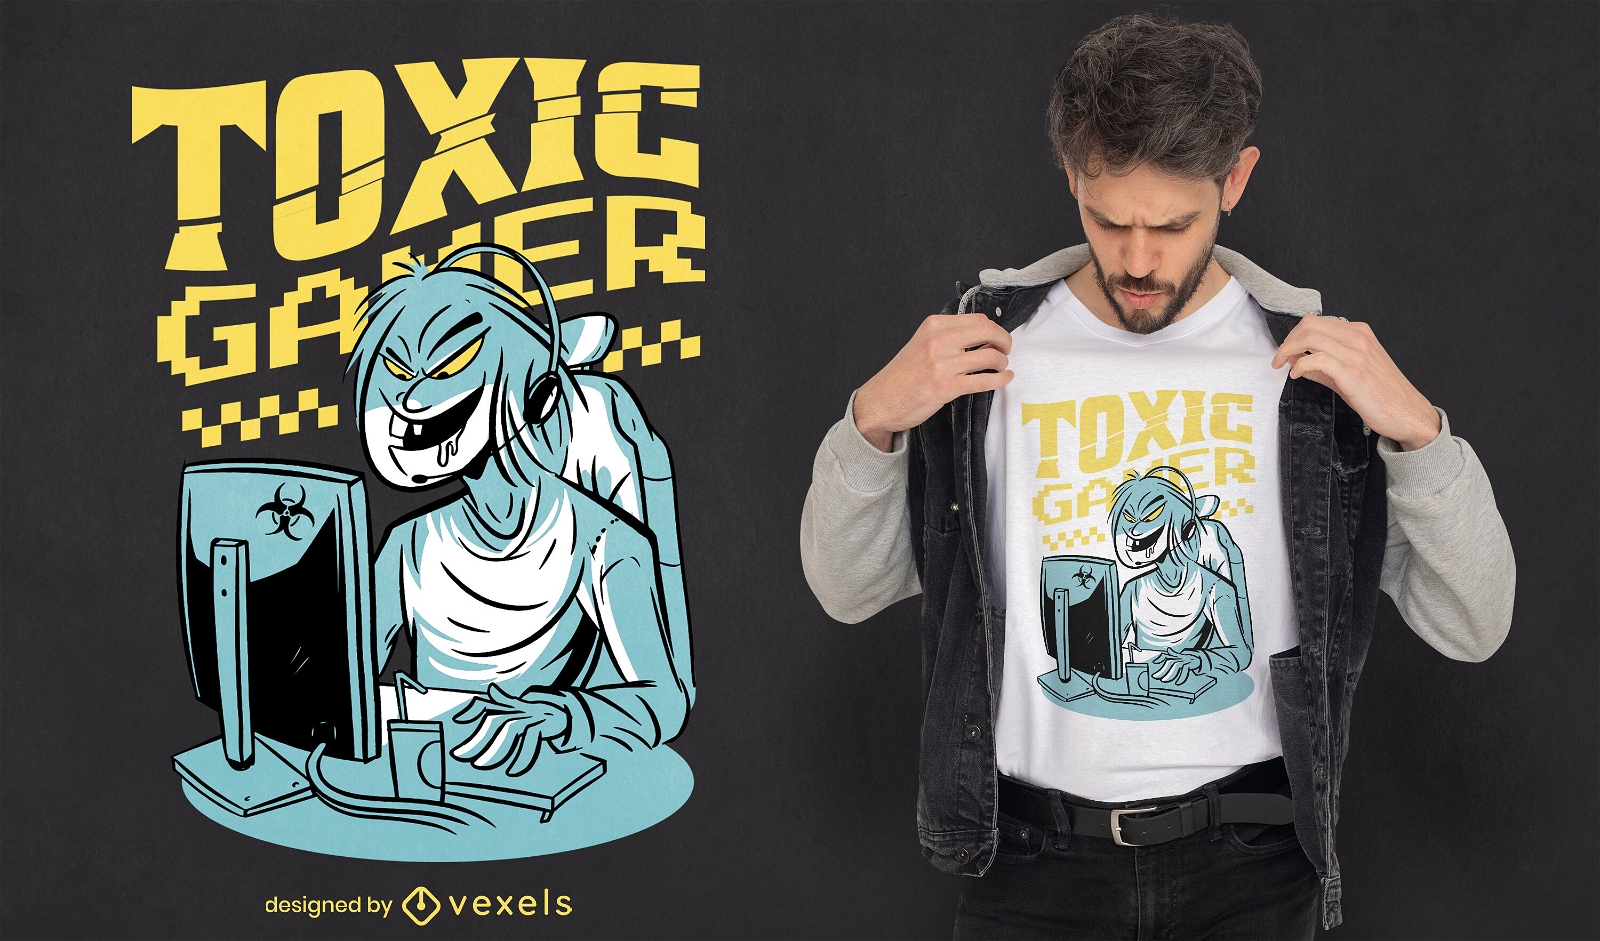 Toxic gamer t-shirt design